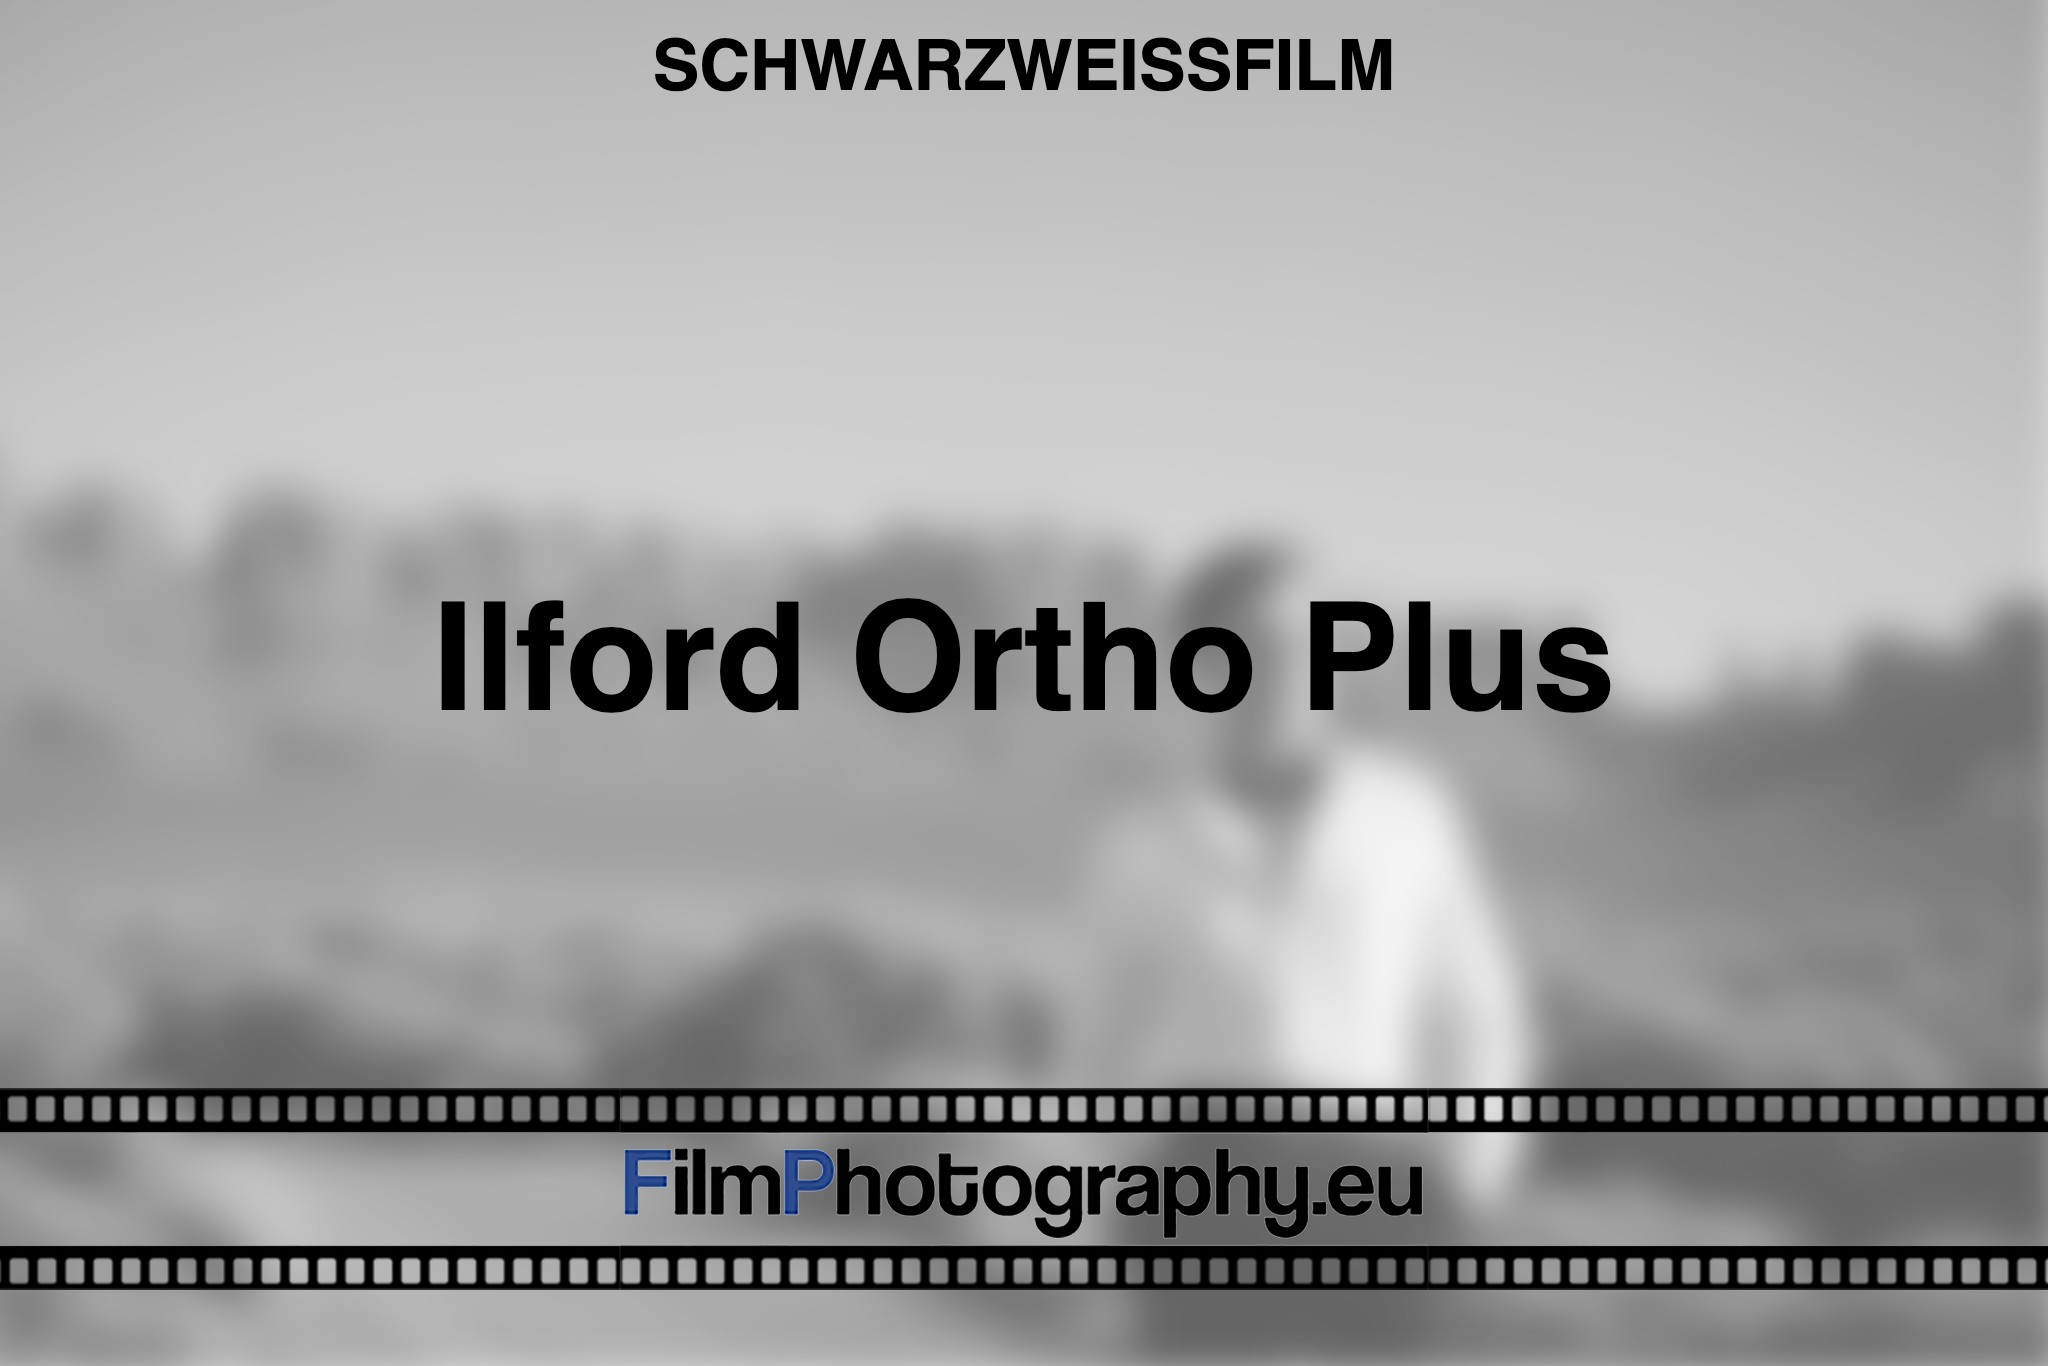 ilford-ortho-plus-schwarzweißfilm-bnv